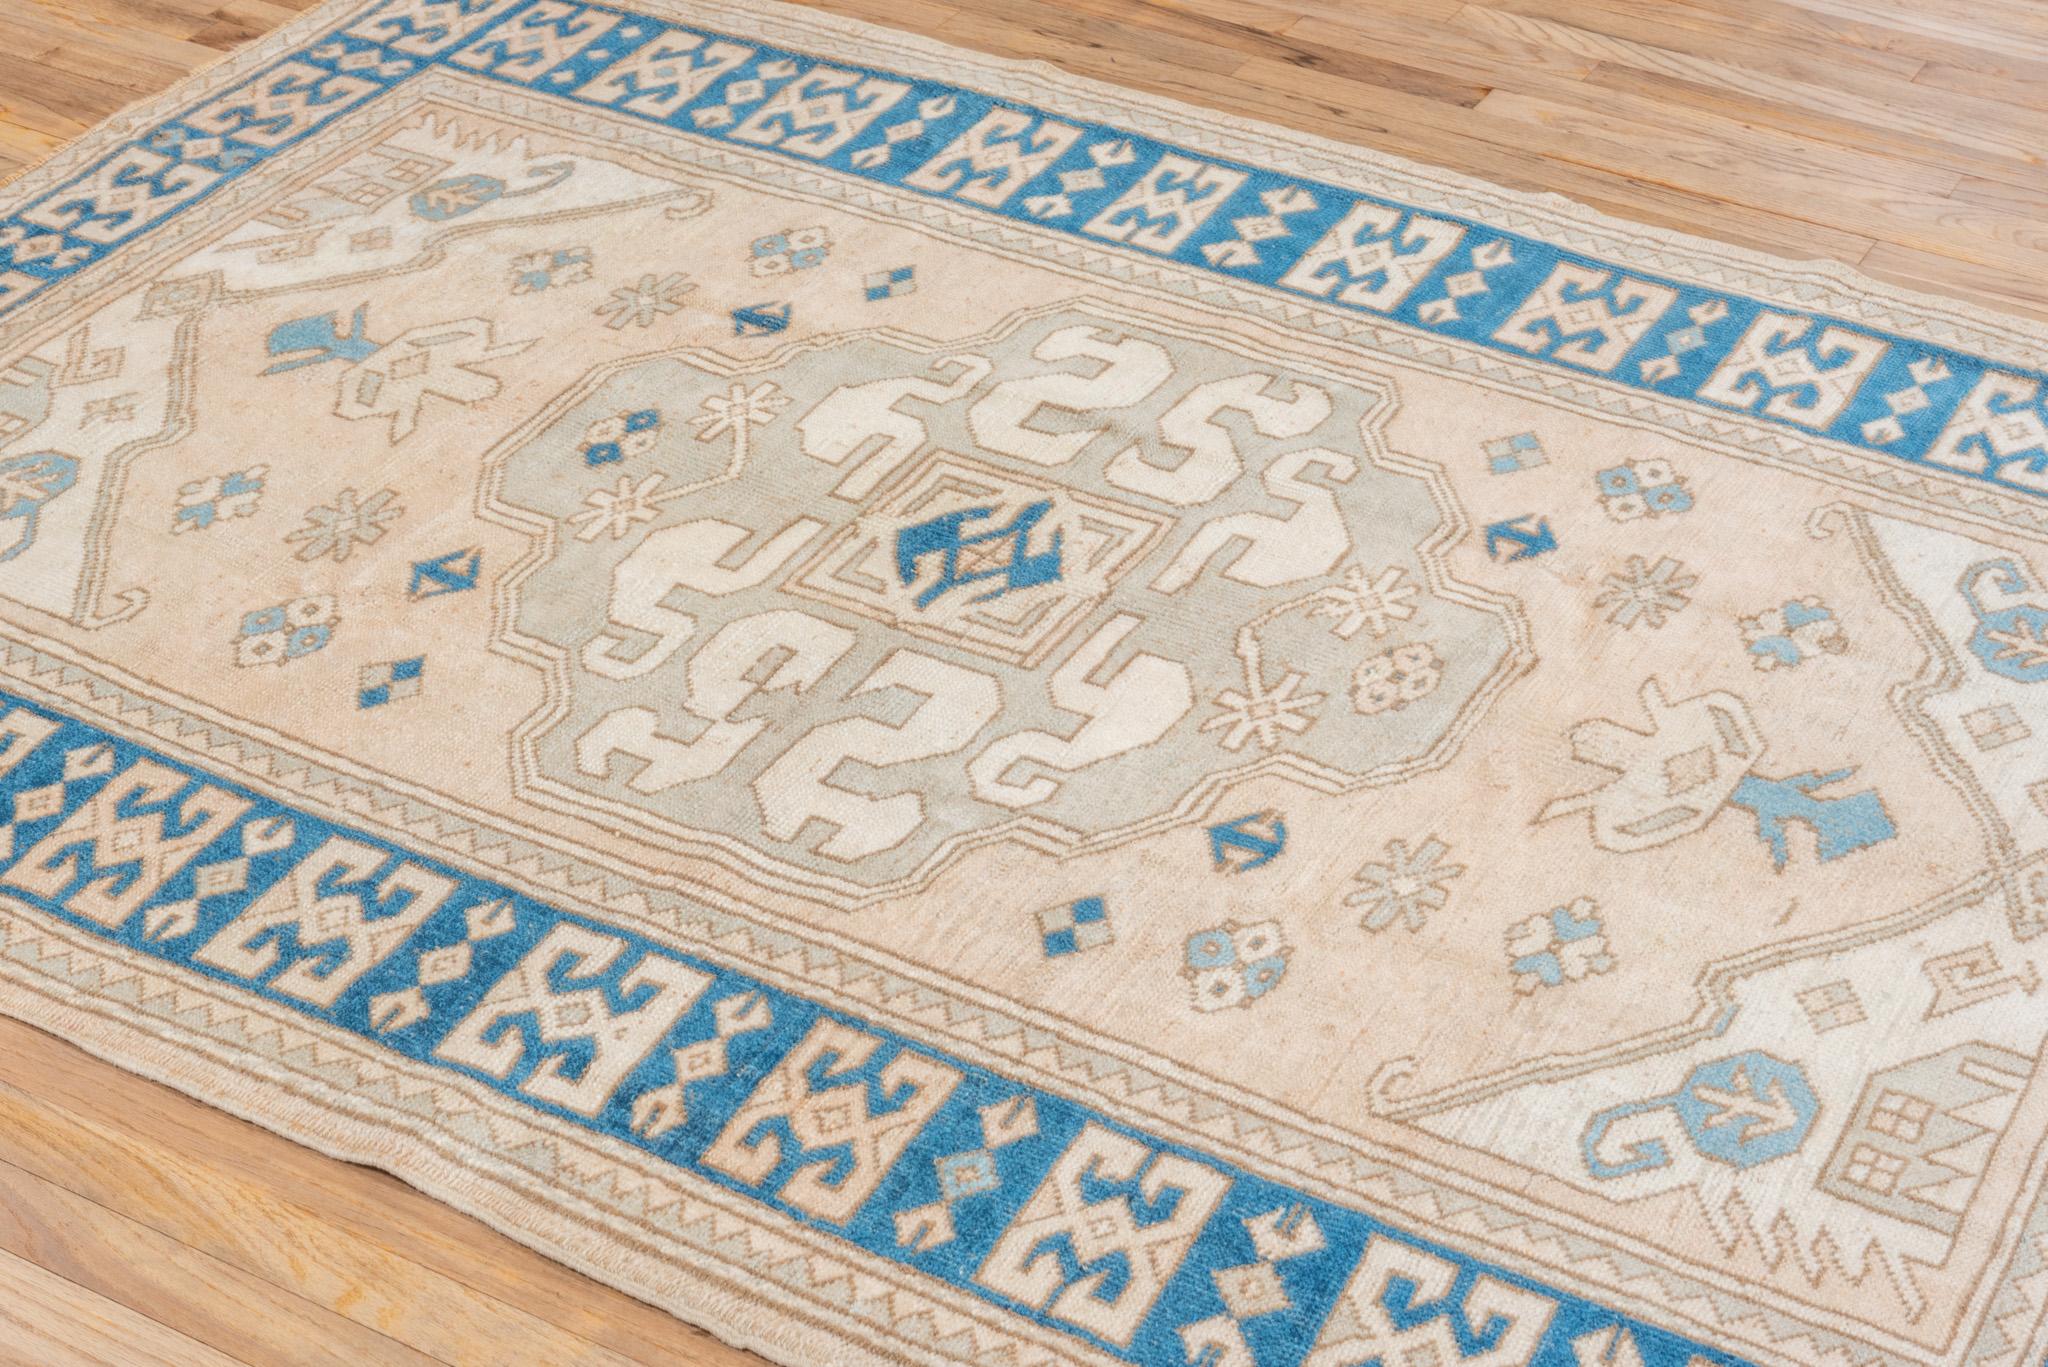 Oushak-Teppiche haben eine lange Geschichte, die bis ins 15. Jahrhundert während des Osmanischen Reiches zurückreicht. Im 16. und 17. Jahrhundert wurden sie in Europa populär, insbesondere in Frankreich und England, wo sie von Aristokraten und